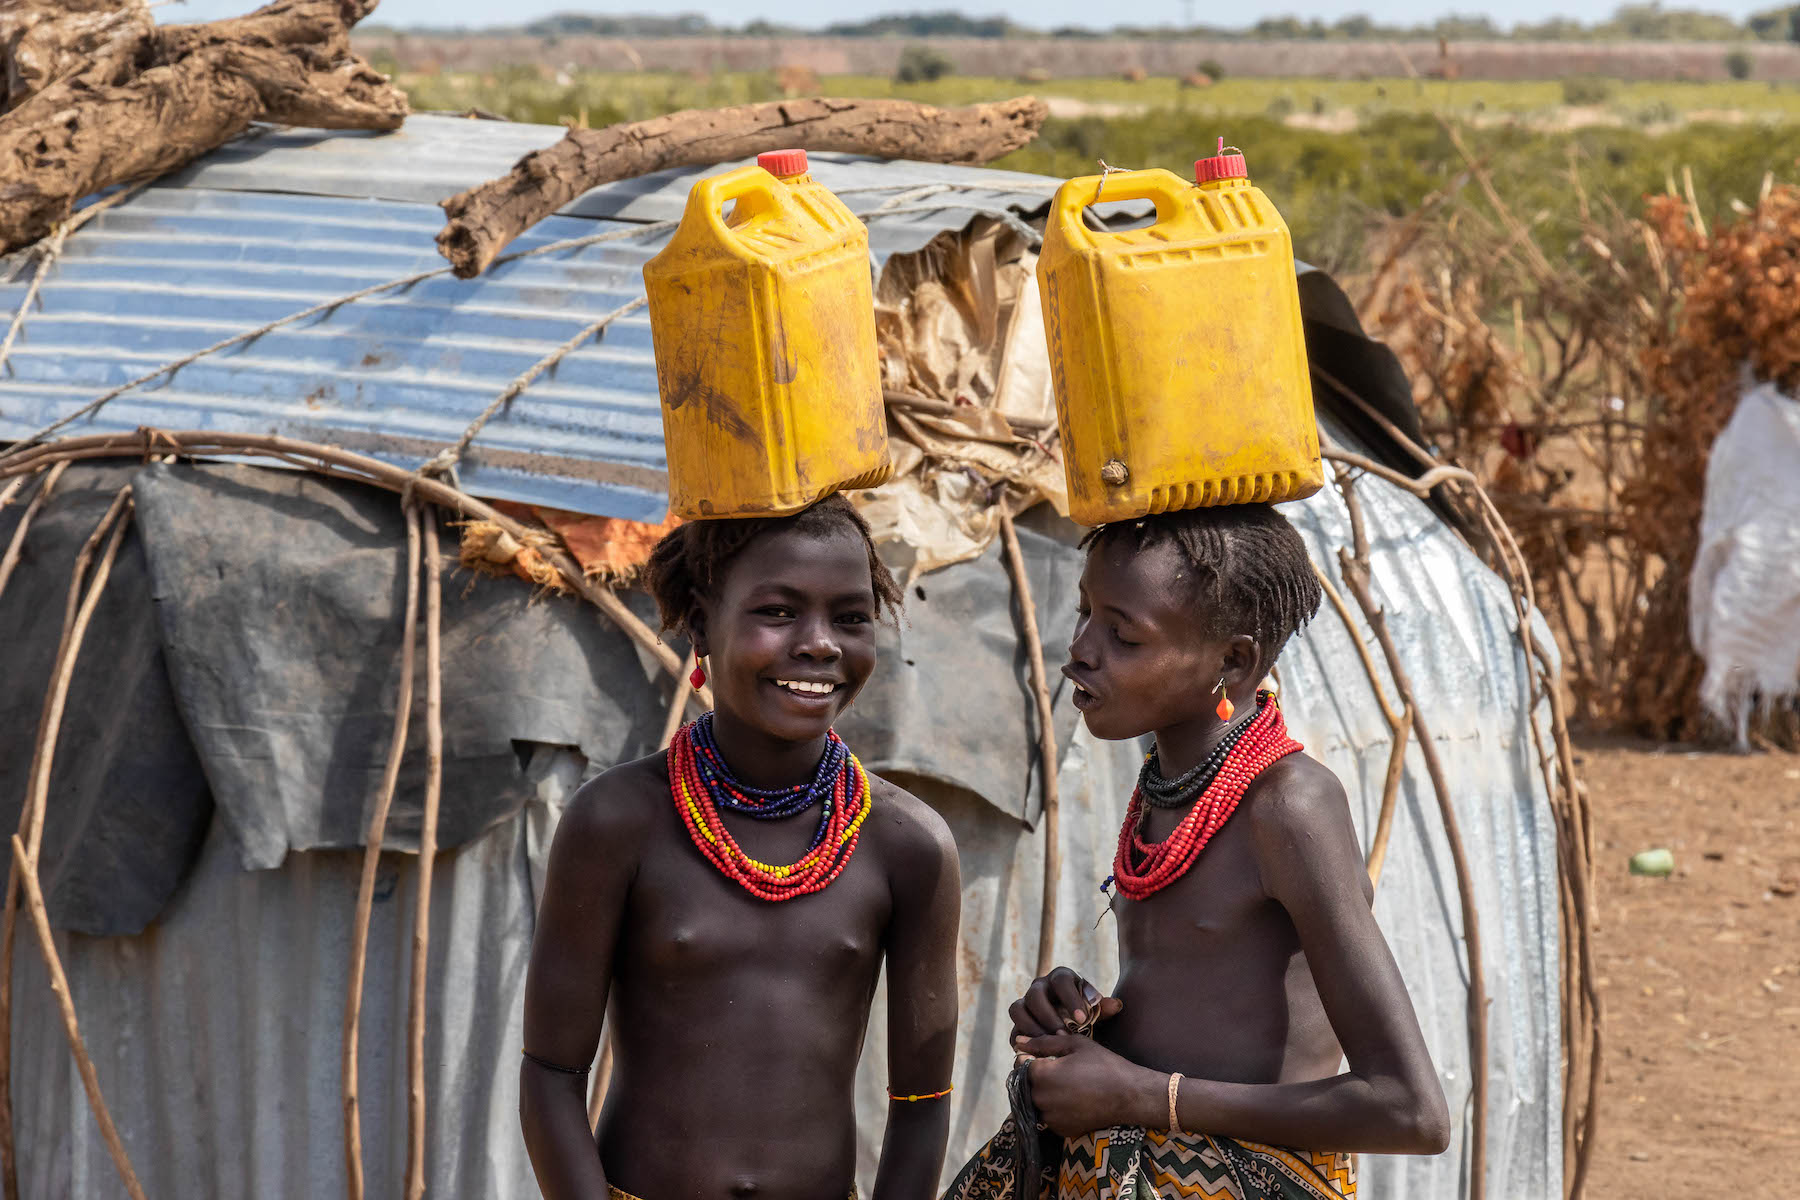 Nia i Kaya de tornada del pou (Sudan del Sud)